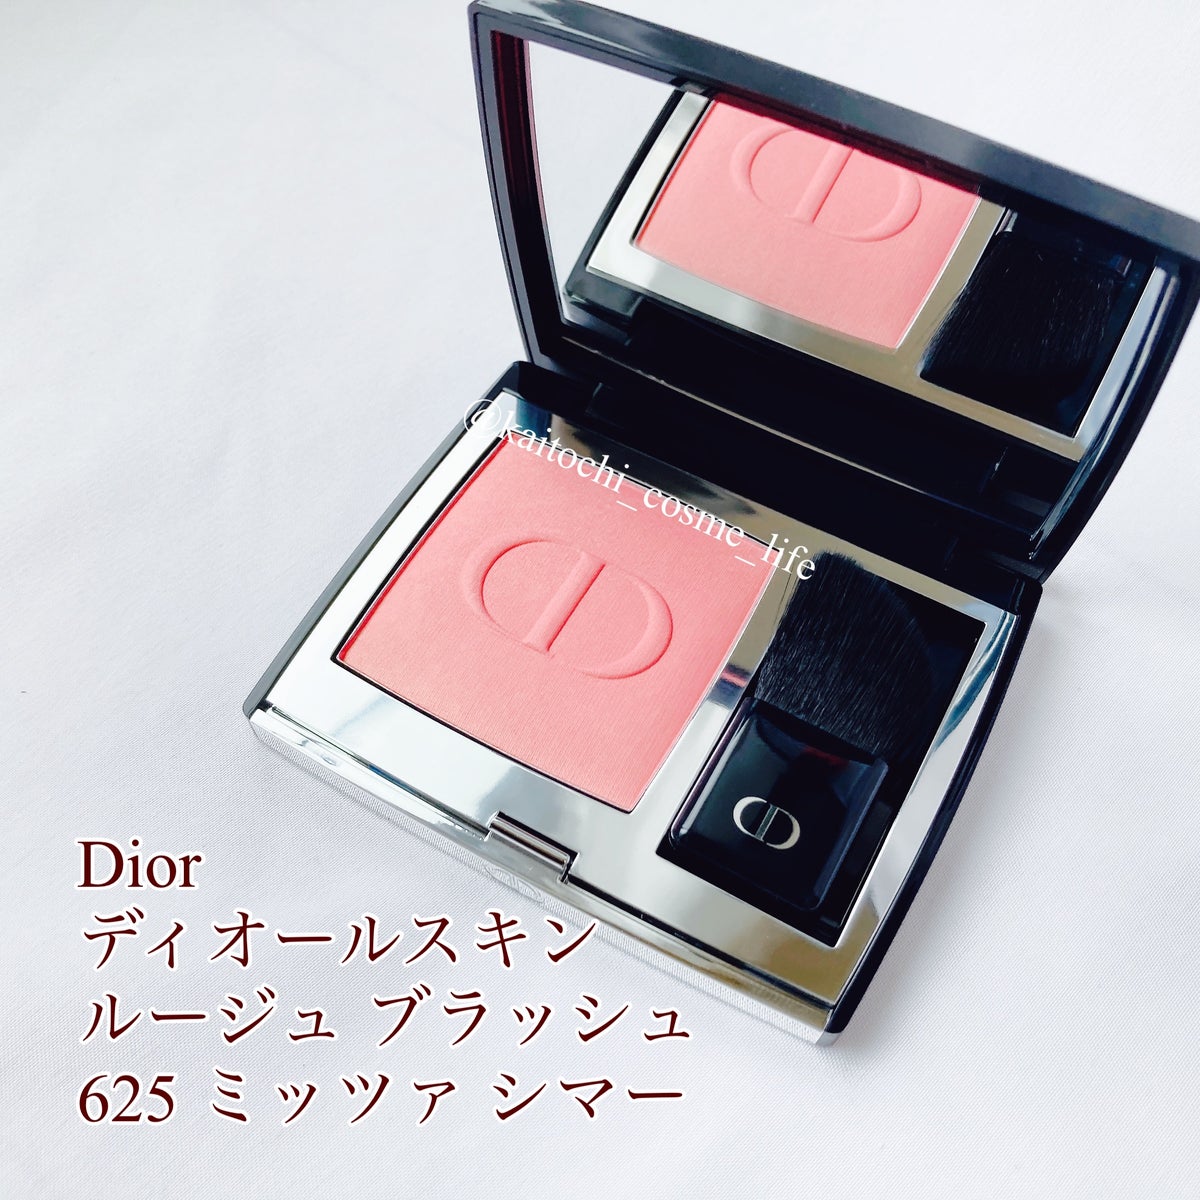 Dior 伊勢丹限定 ディオール スキンルージュ ブラッシュ 290 - メイク 